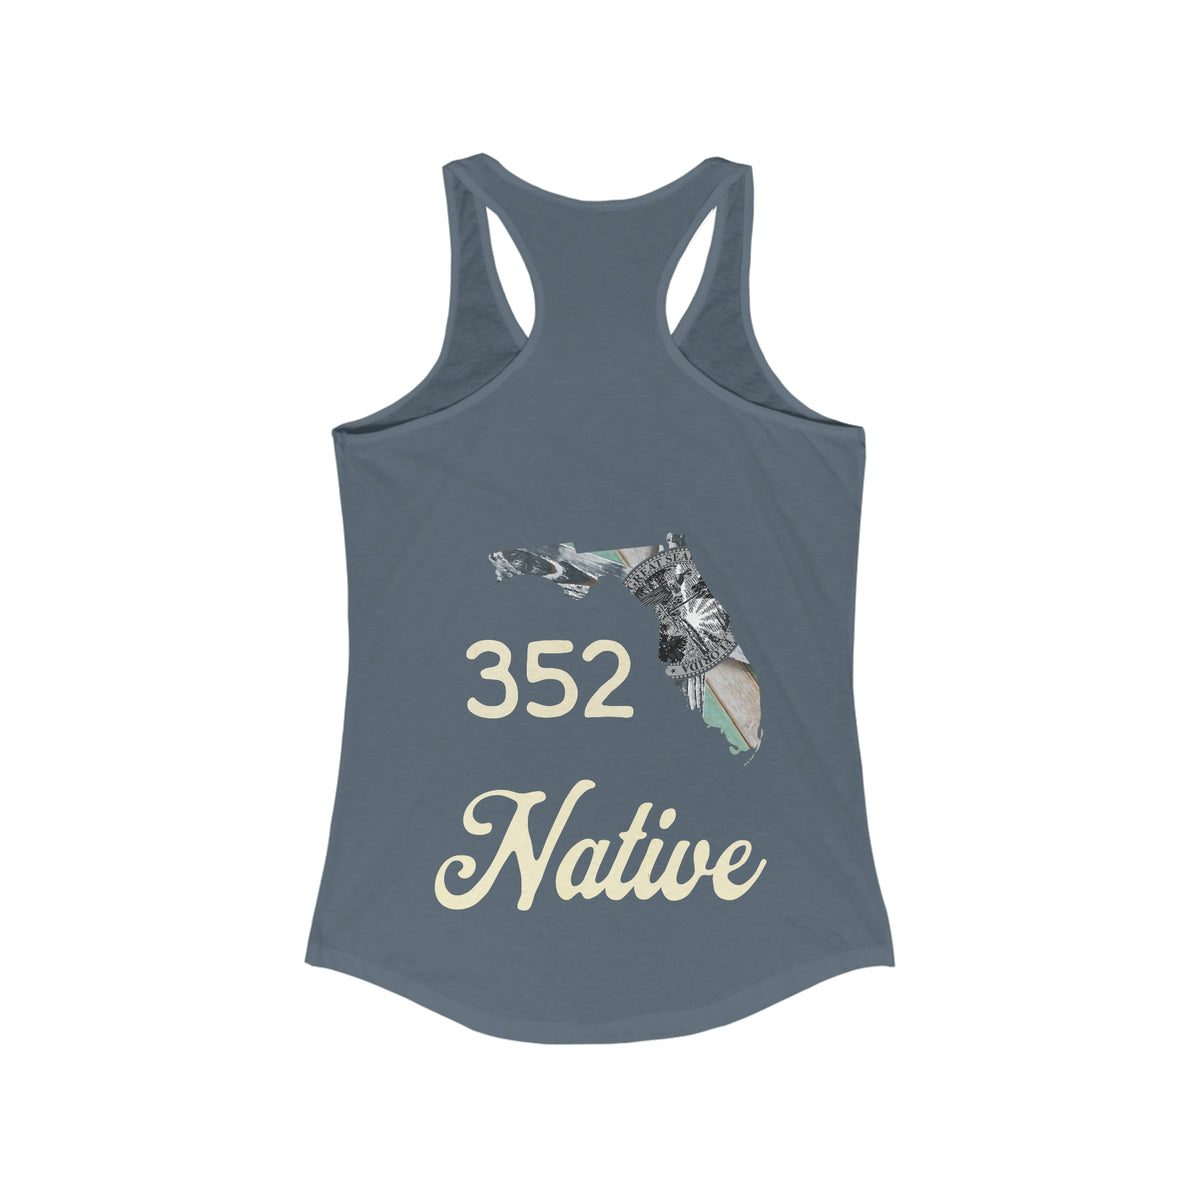 352 Native Women's Lightweight Tank